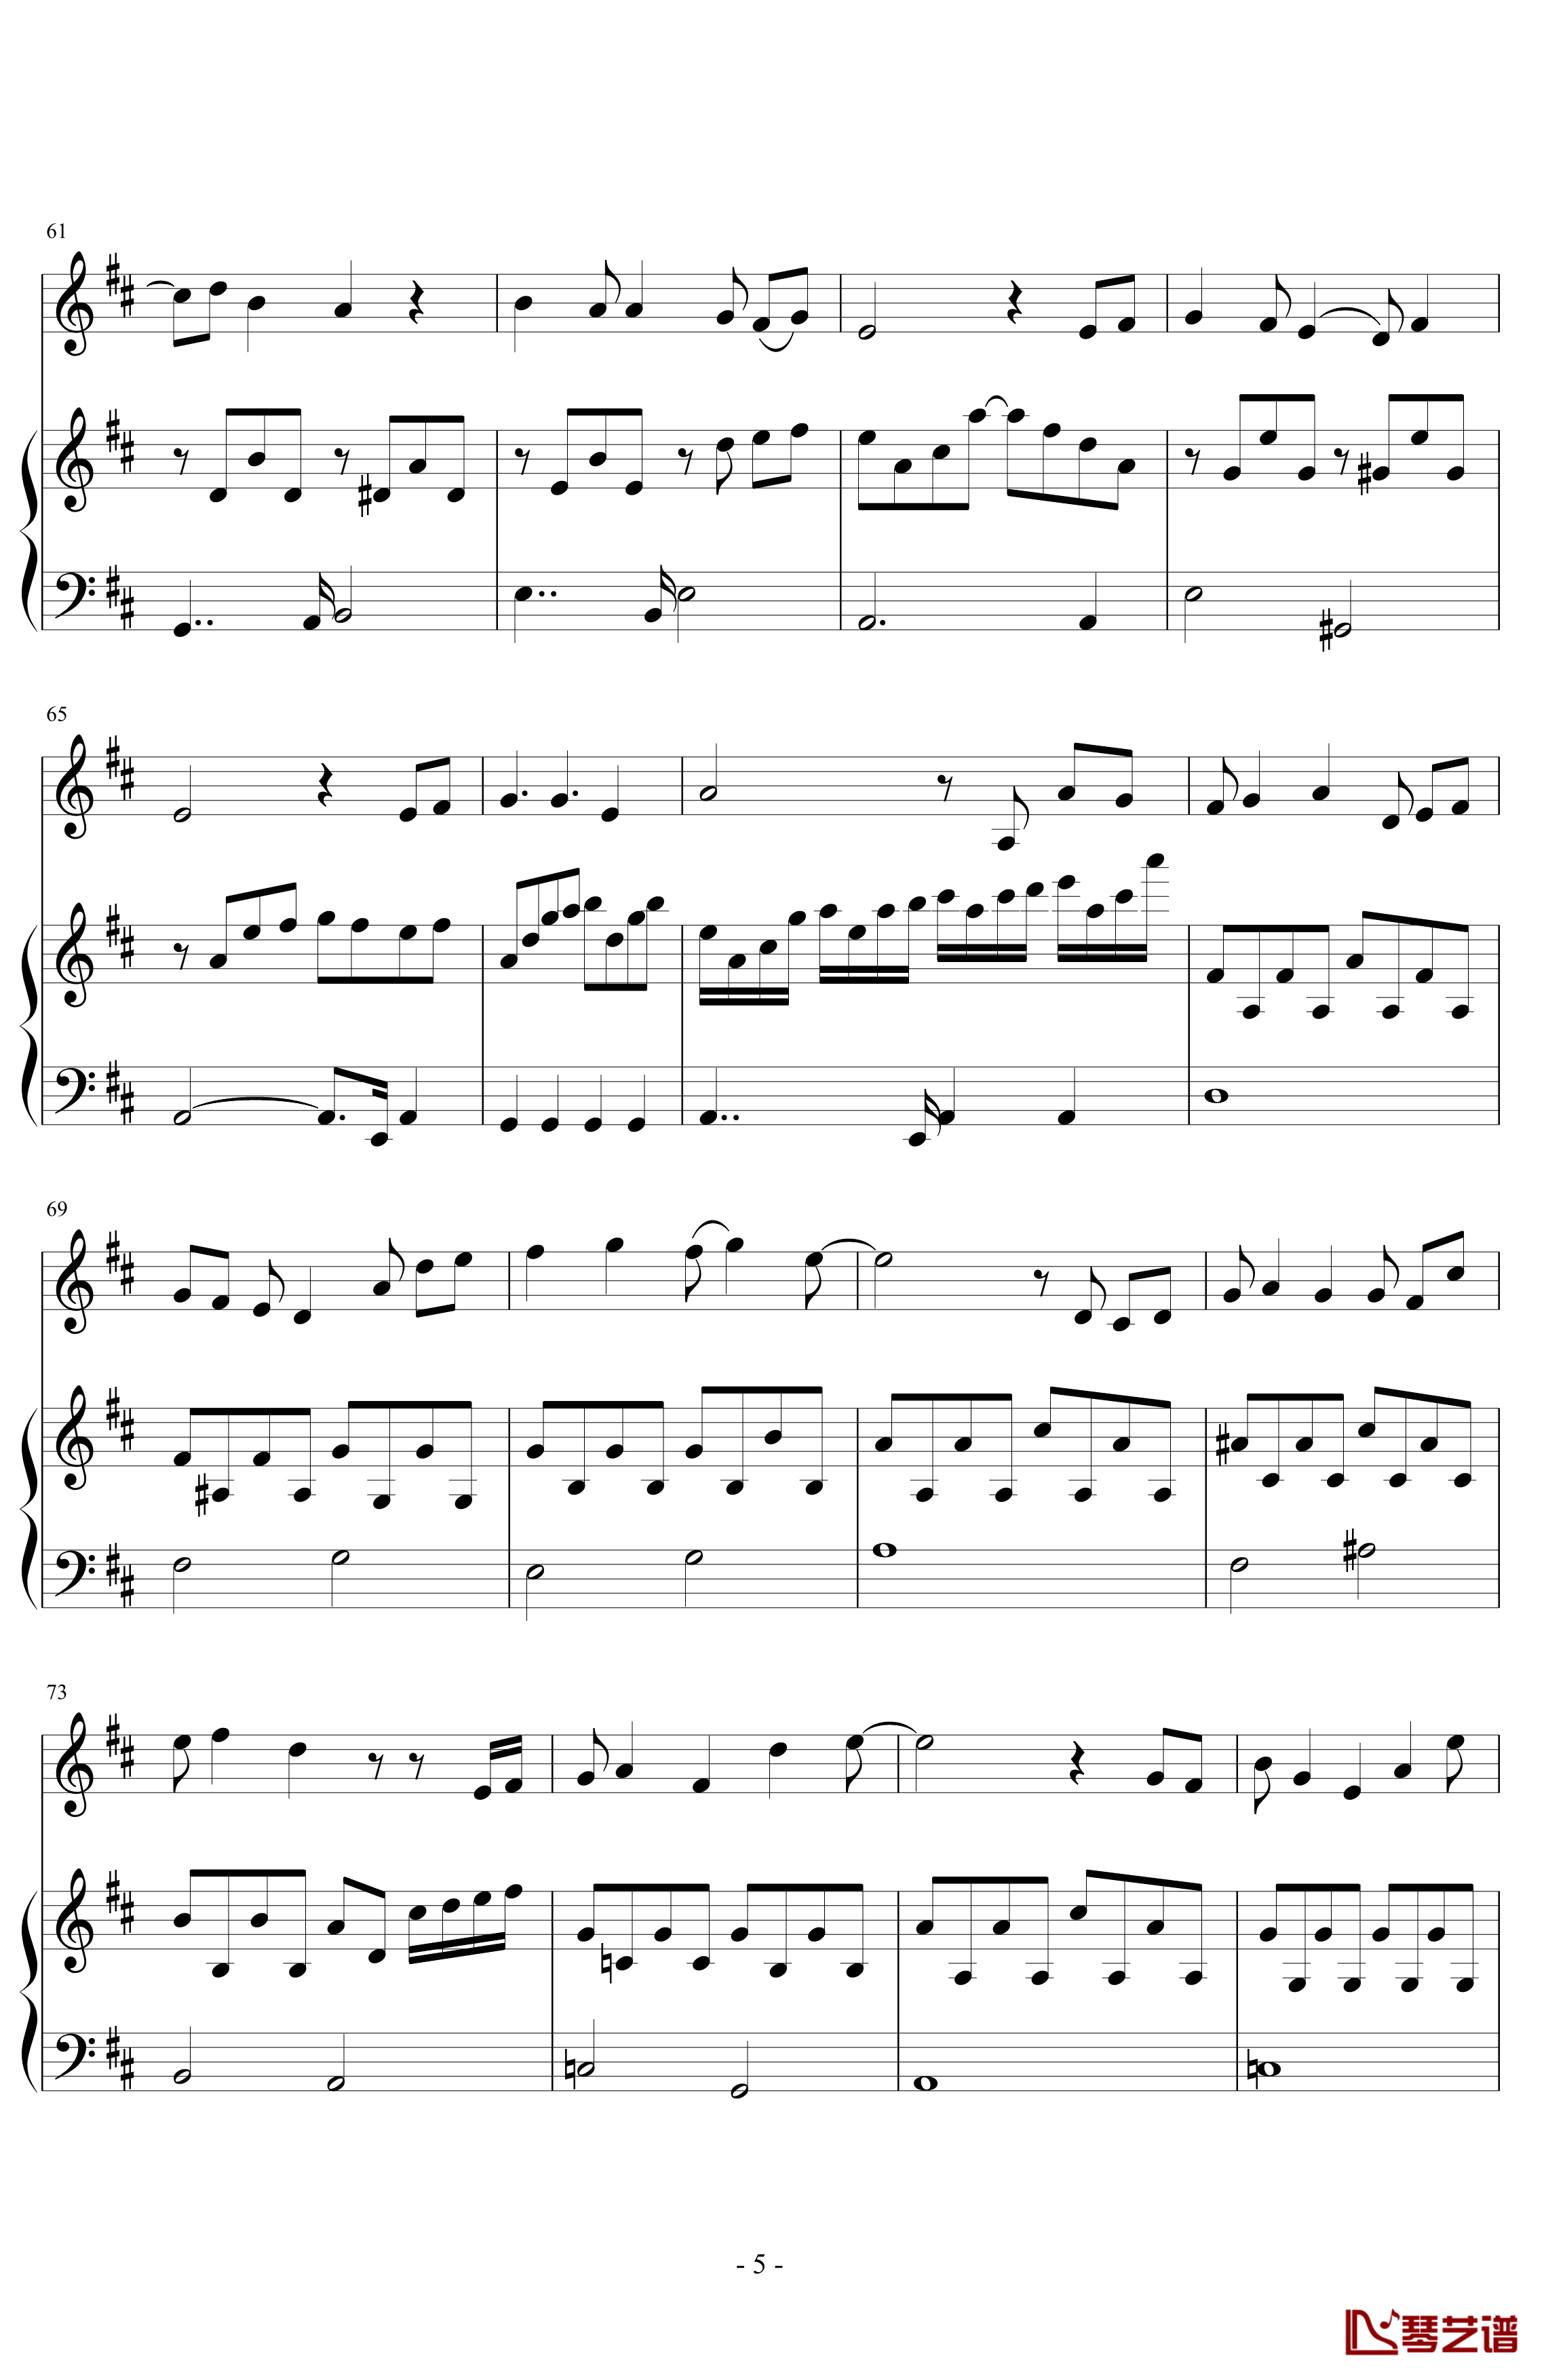 三年级二班钢琴谱-潇洒星空5